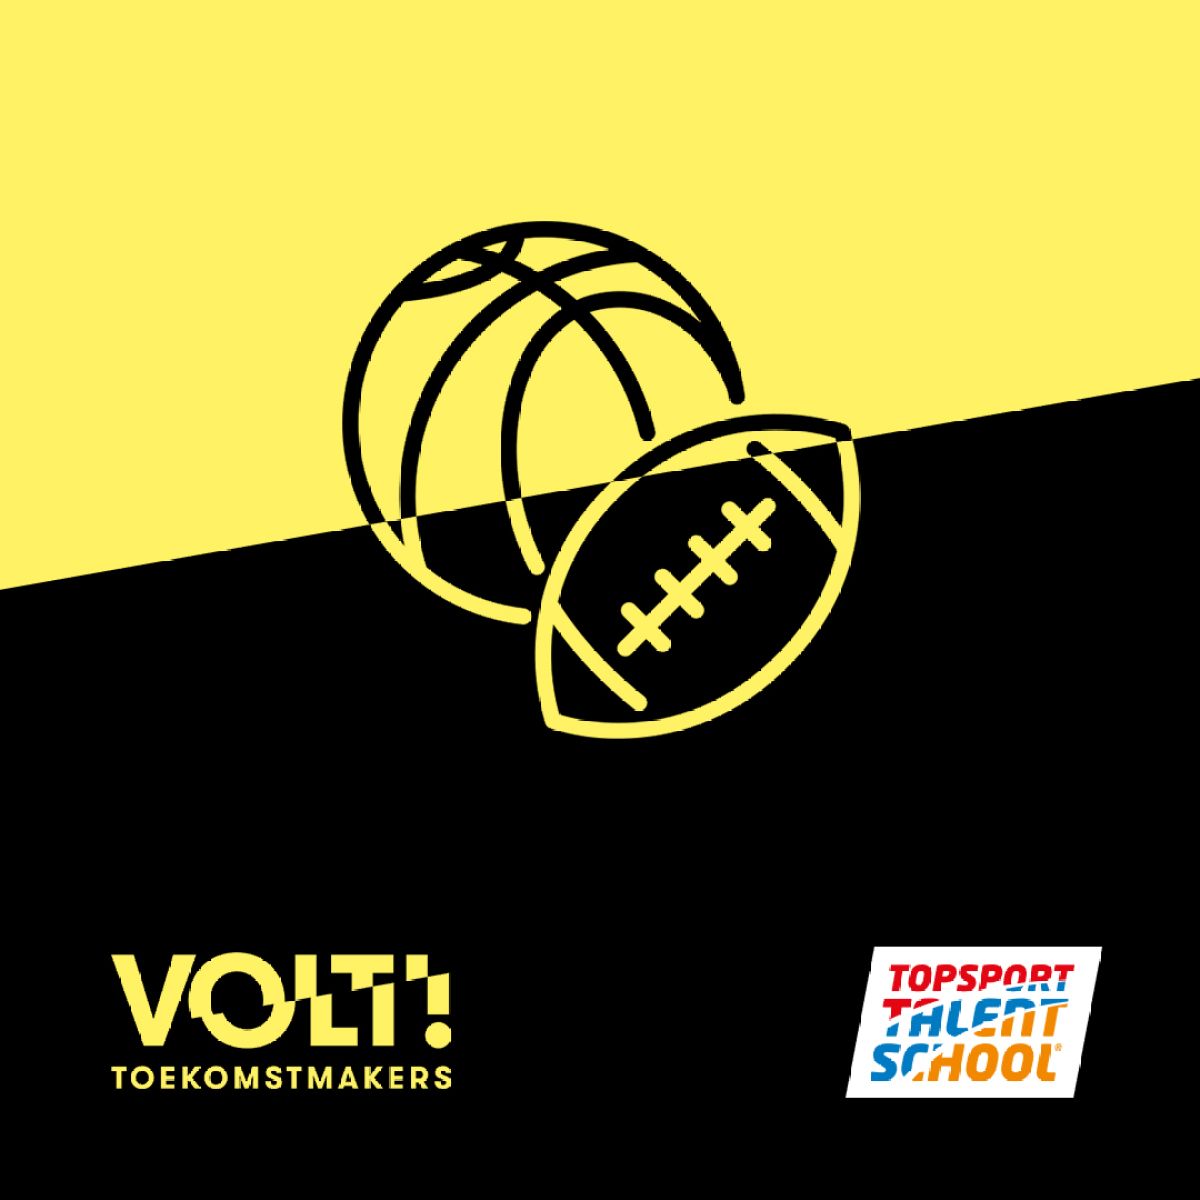 De voordelen van VOLT! Toekomstmakers als Topsport Talentschool